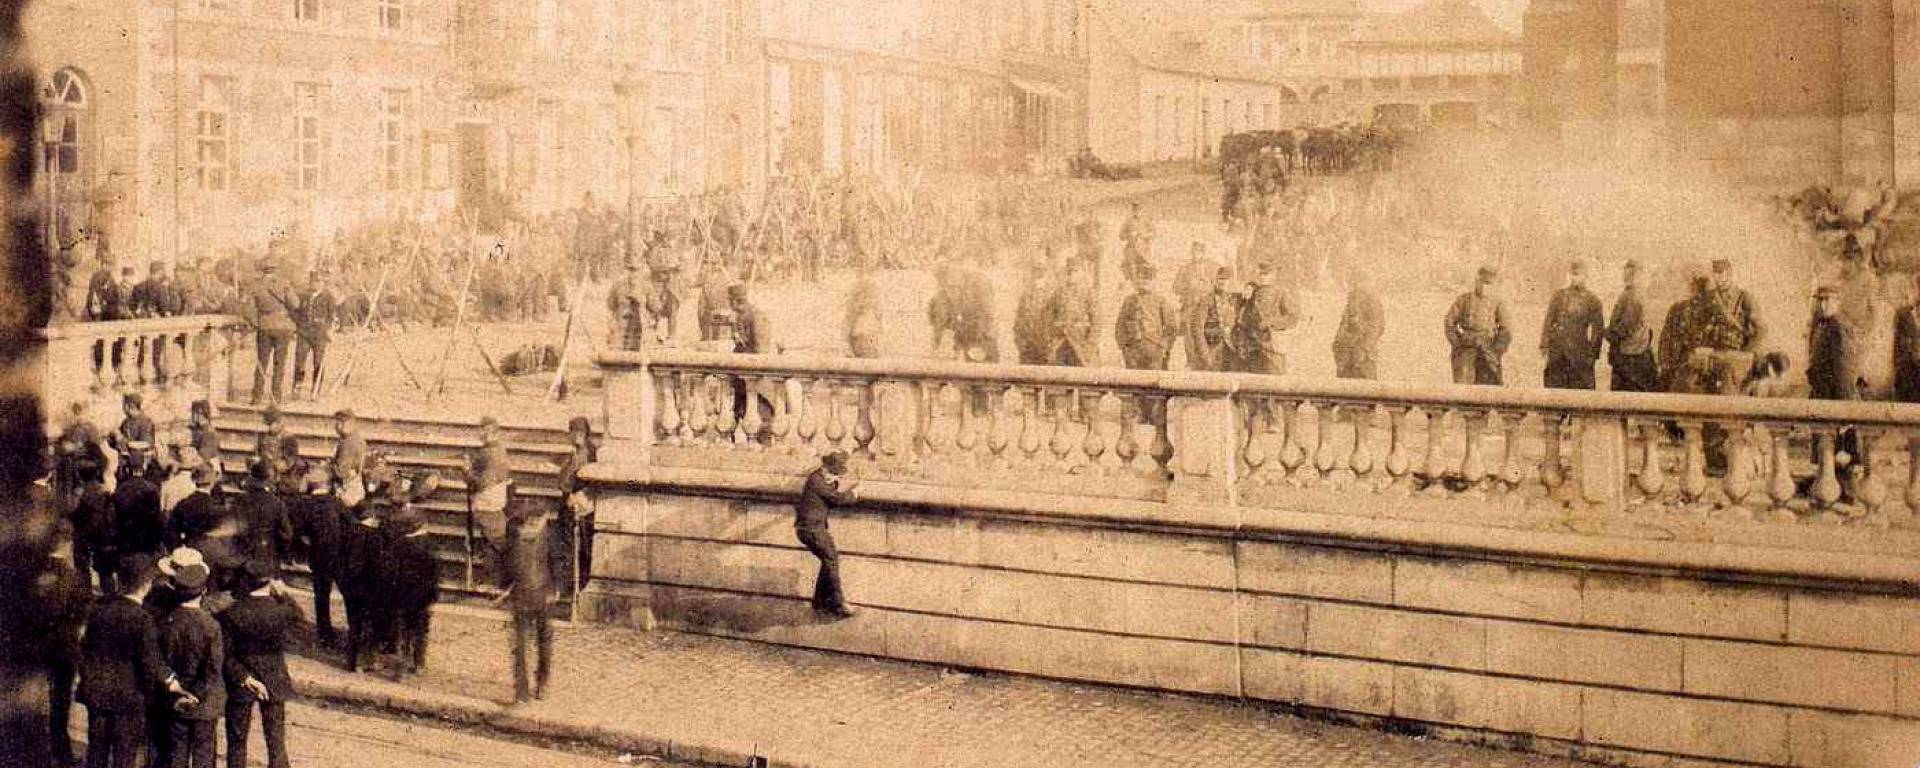 Fourmies. Mai 1891. Cantonnement militaire. Grand-Place.
Louis PERRON
© Écomusée de l’Avesnois – C